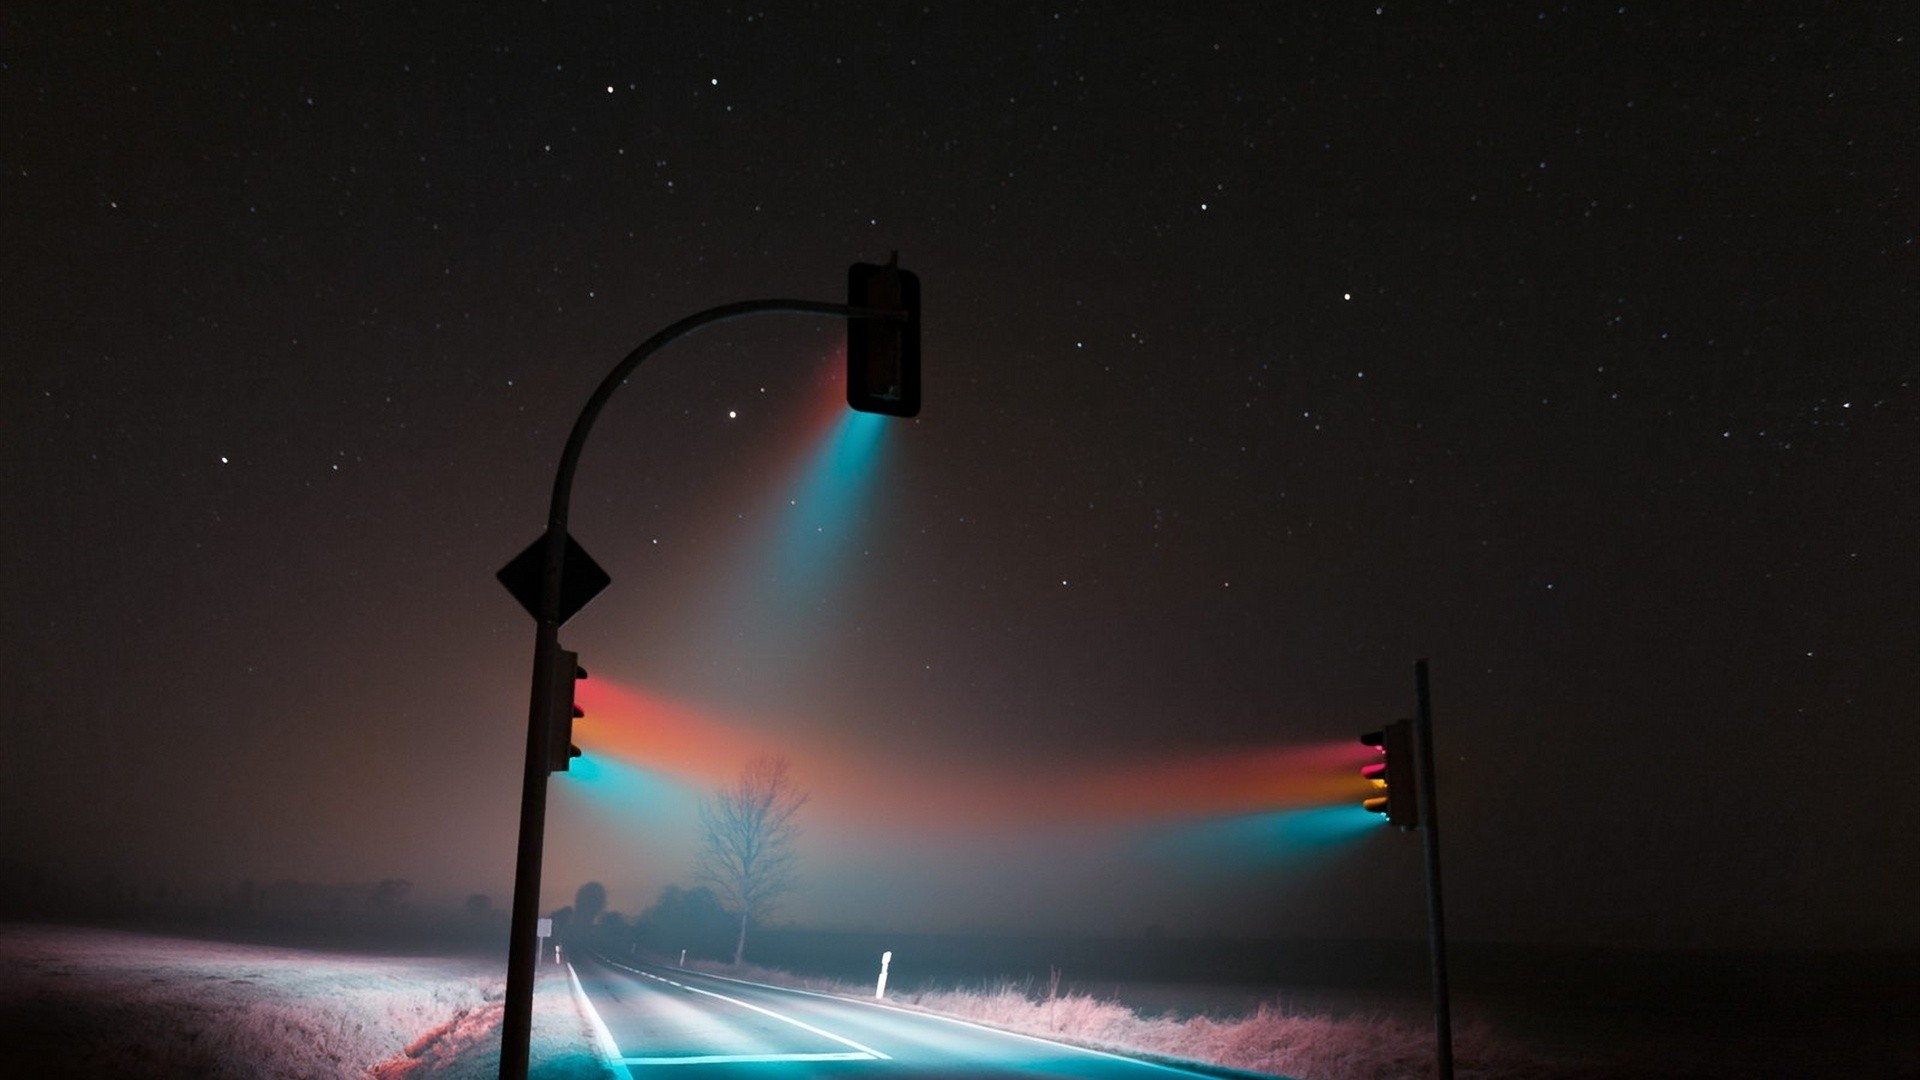 Wallpaper Traffic lights in night